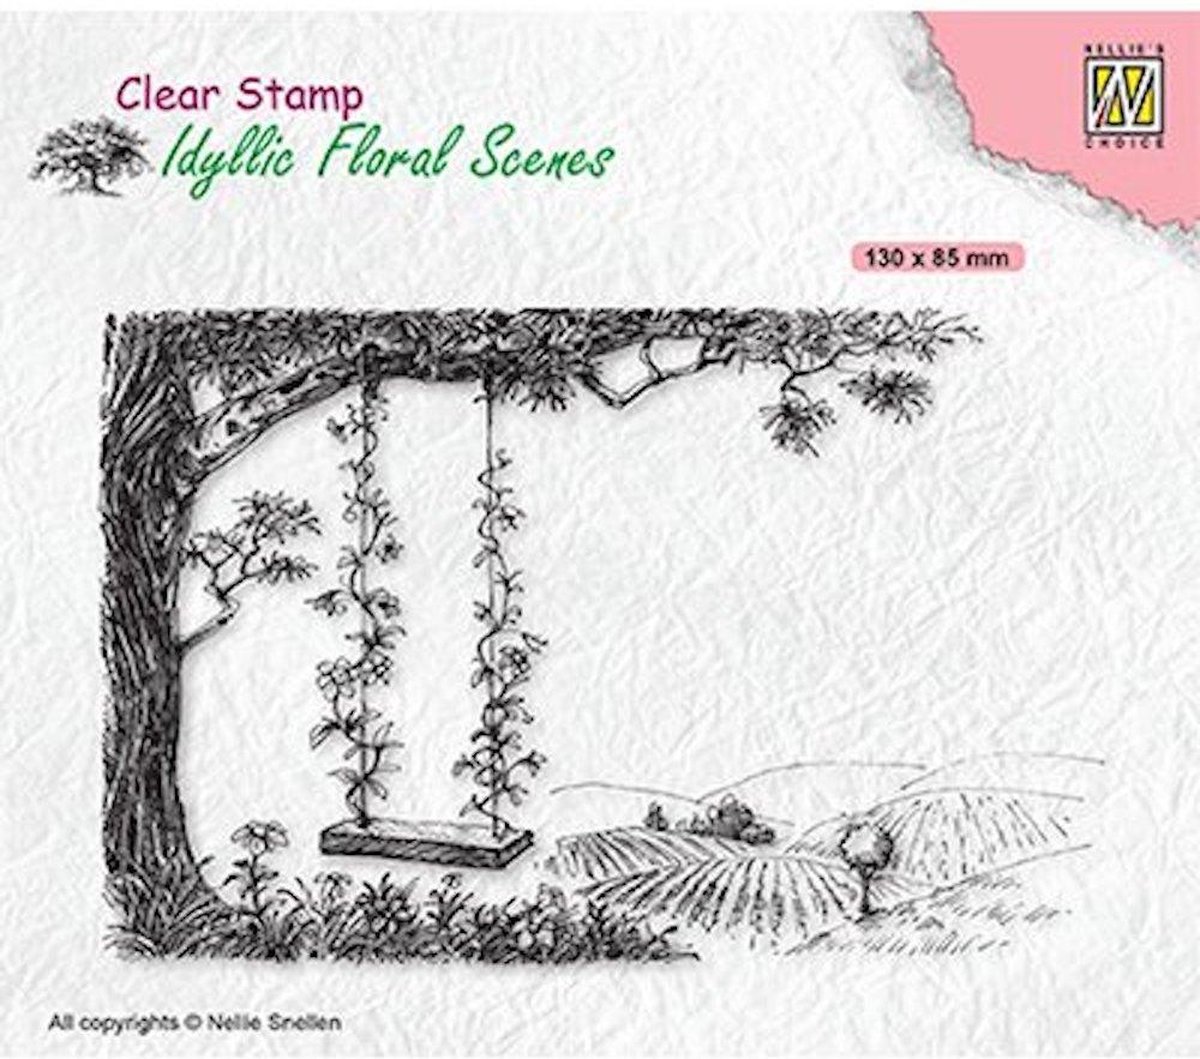 IFS035 Nellie Snellen clearstamp - Idyllic Floral Scenes - Tree with swing - stempel scene landschap boom schommel